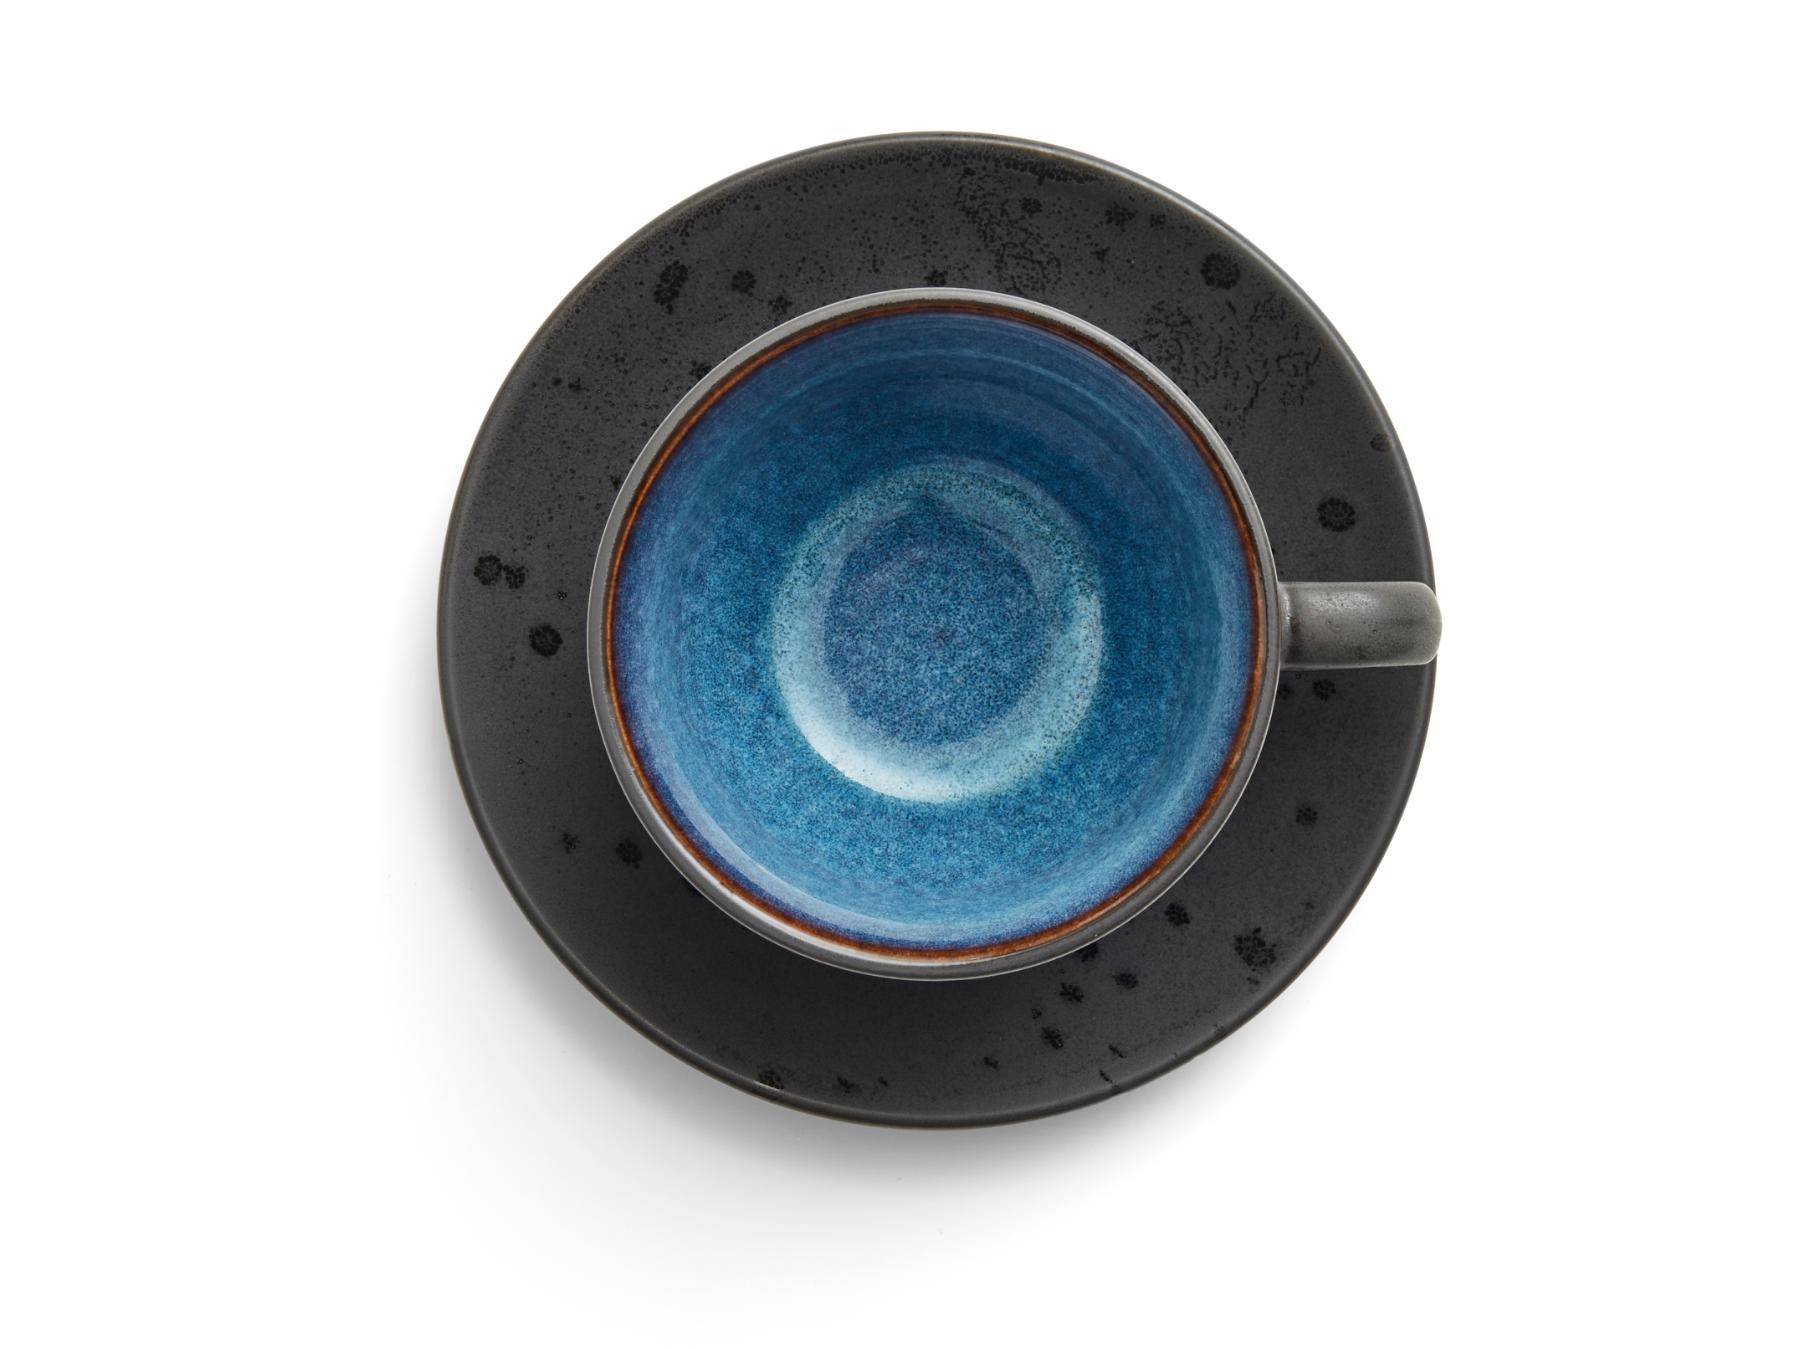 Bitz Koffiekop (240ml) + schotel van zwart aardewerk met gekleurde (donkere tinten) binnenkant (8-Delig) - Accessoire Loods